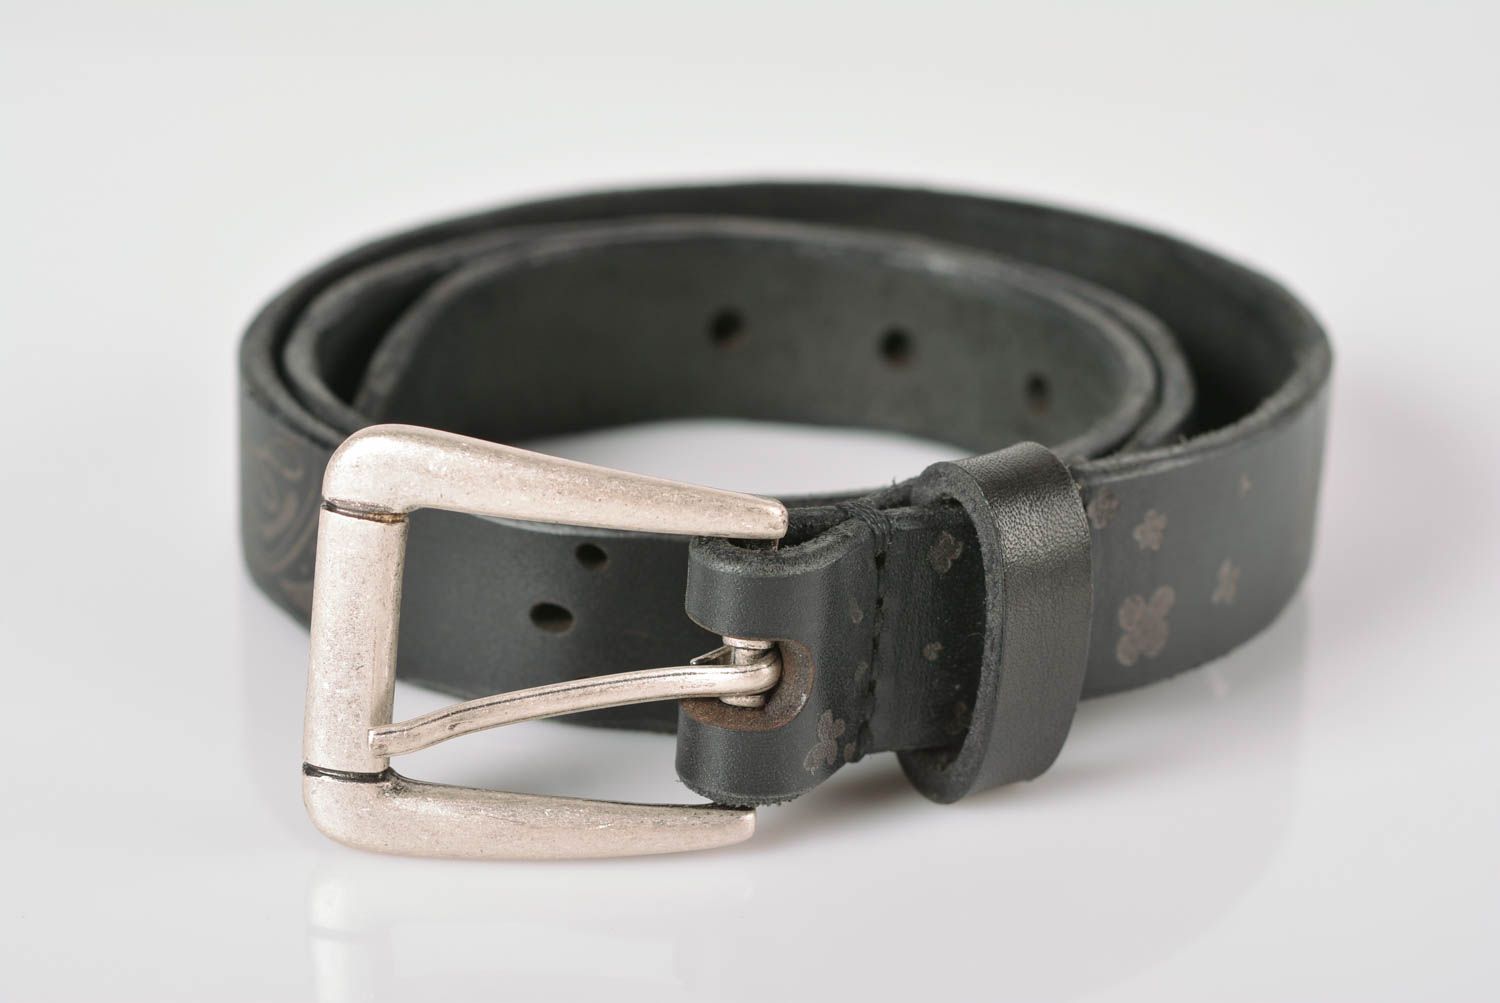 Cinturón de cuero hecho a mano ropa masculina estilosa bonita accesorio de moda foto 1